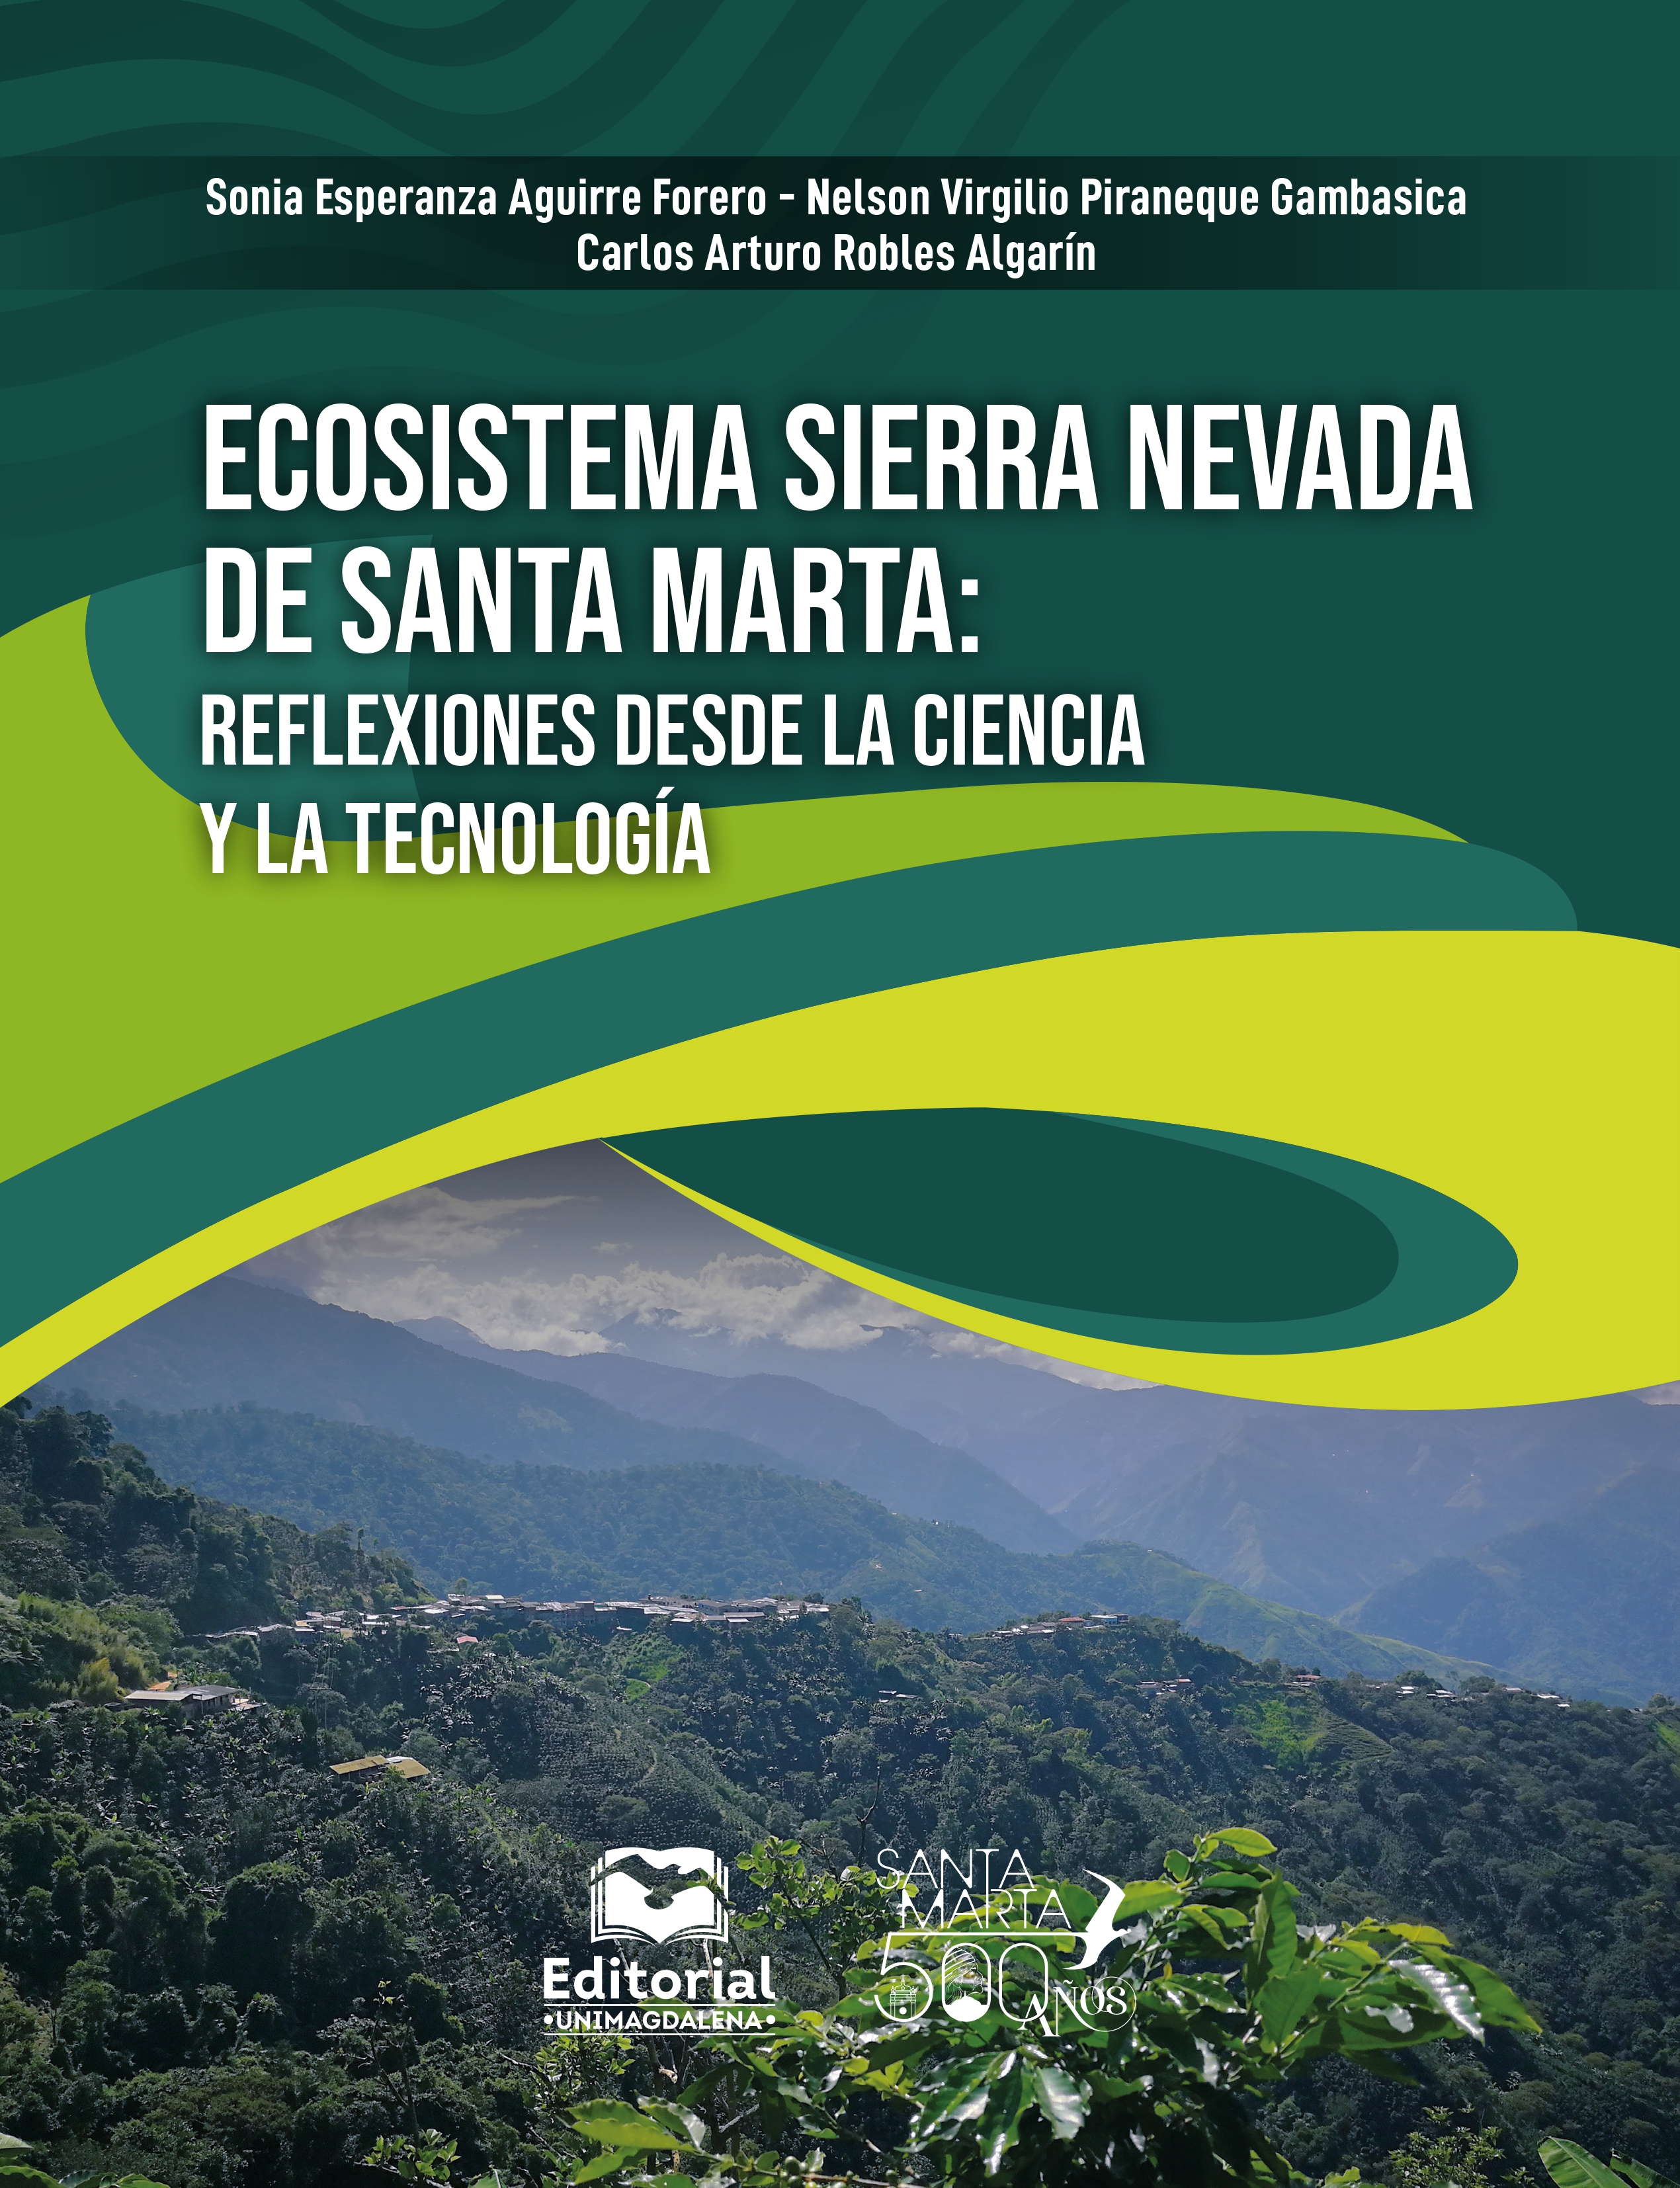 Ecosistema Sierra Nevada de Santa Marta: reflexiones desde la ciencia y la tecnología